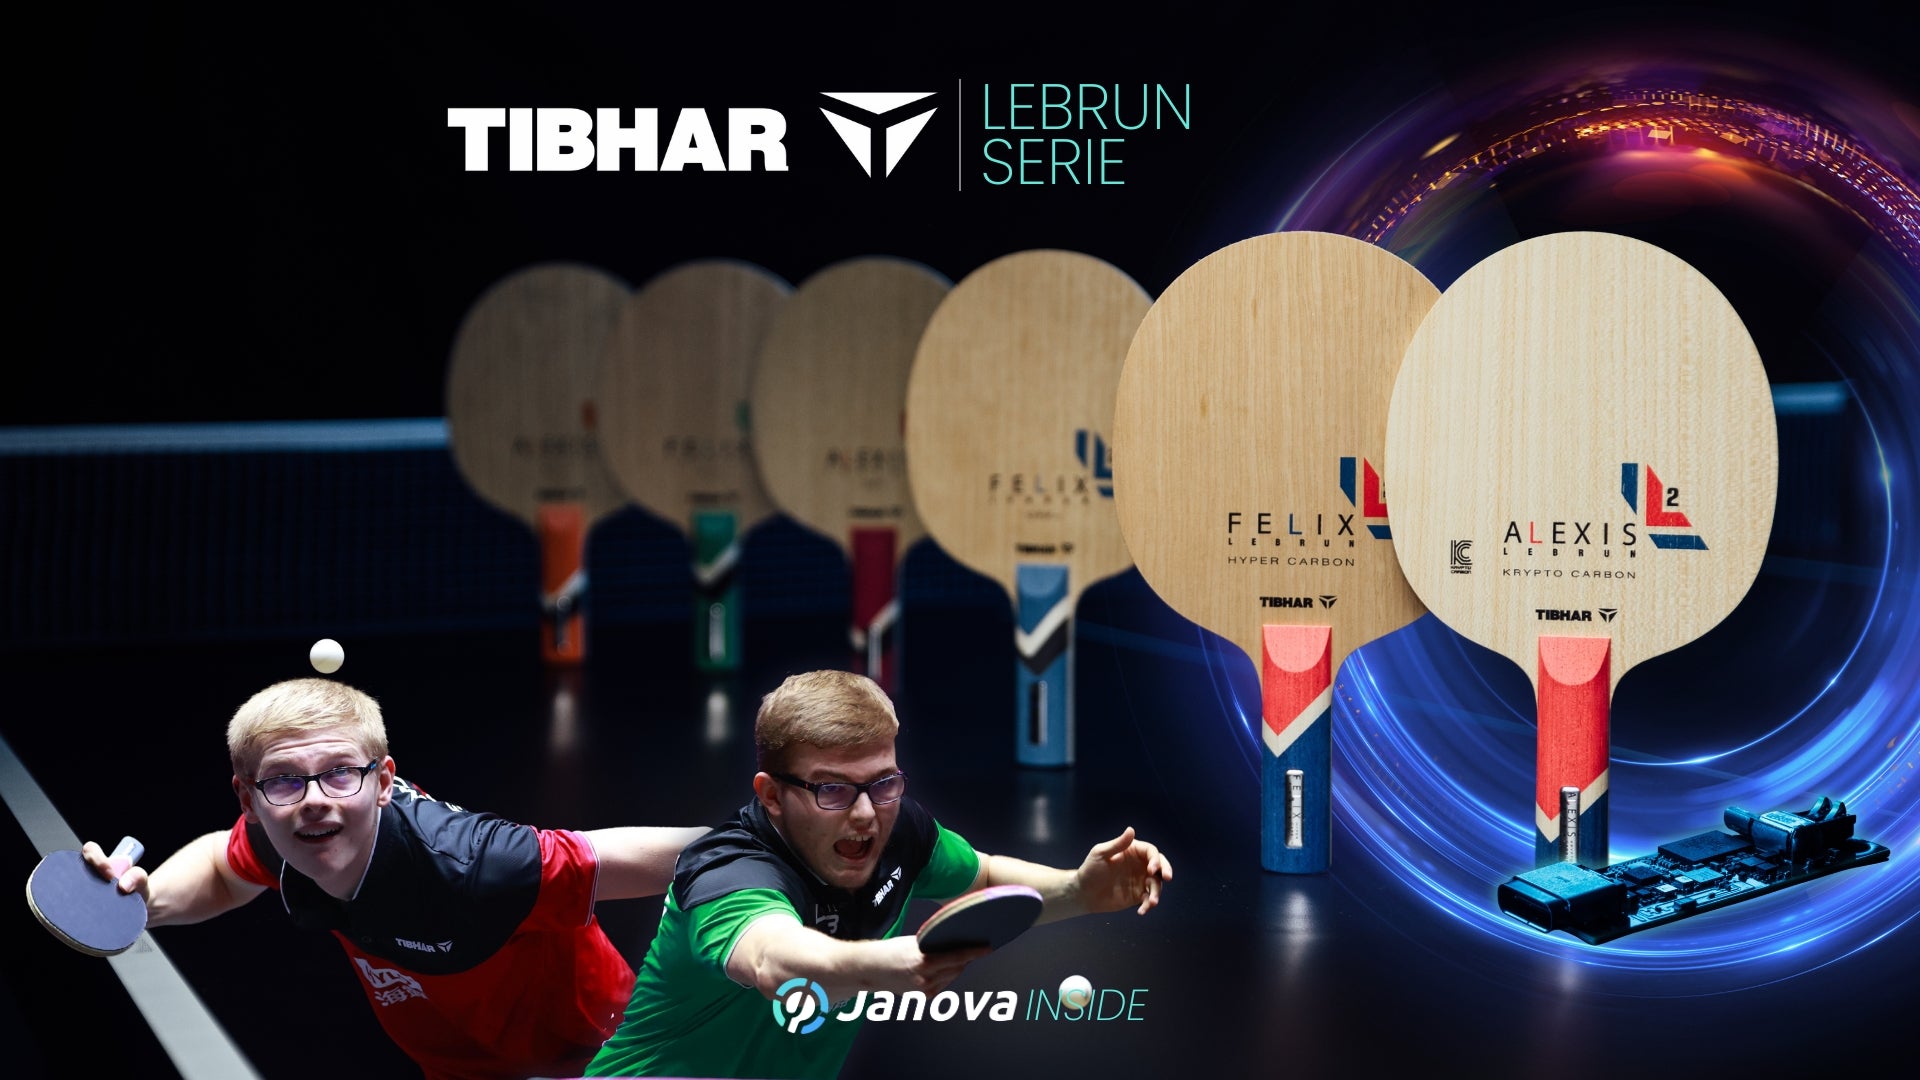 TIBHAR - Lebrun Tischtennishölzer